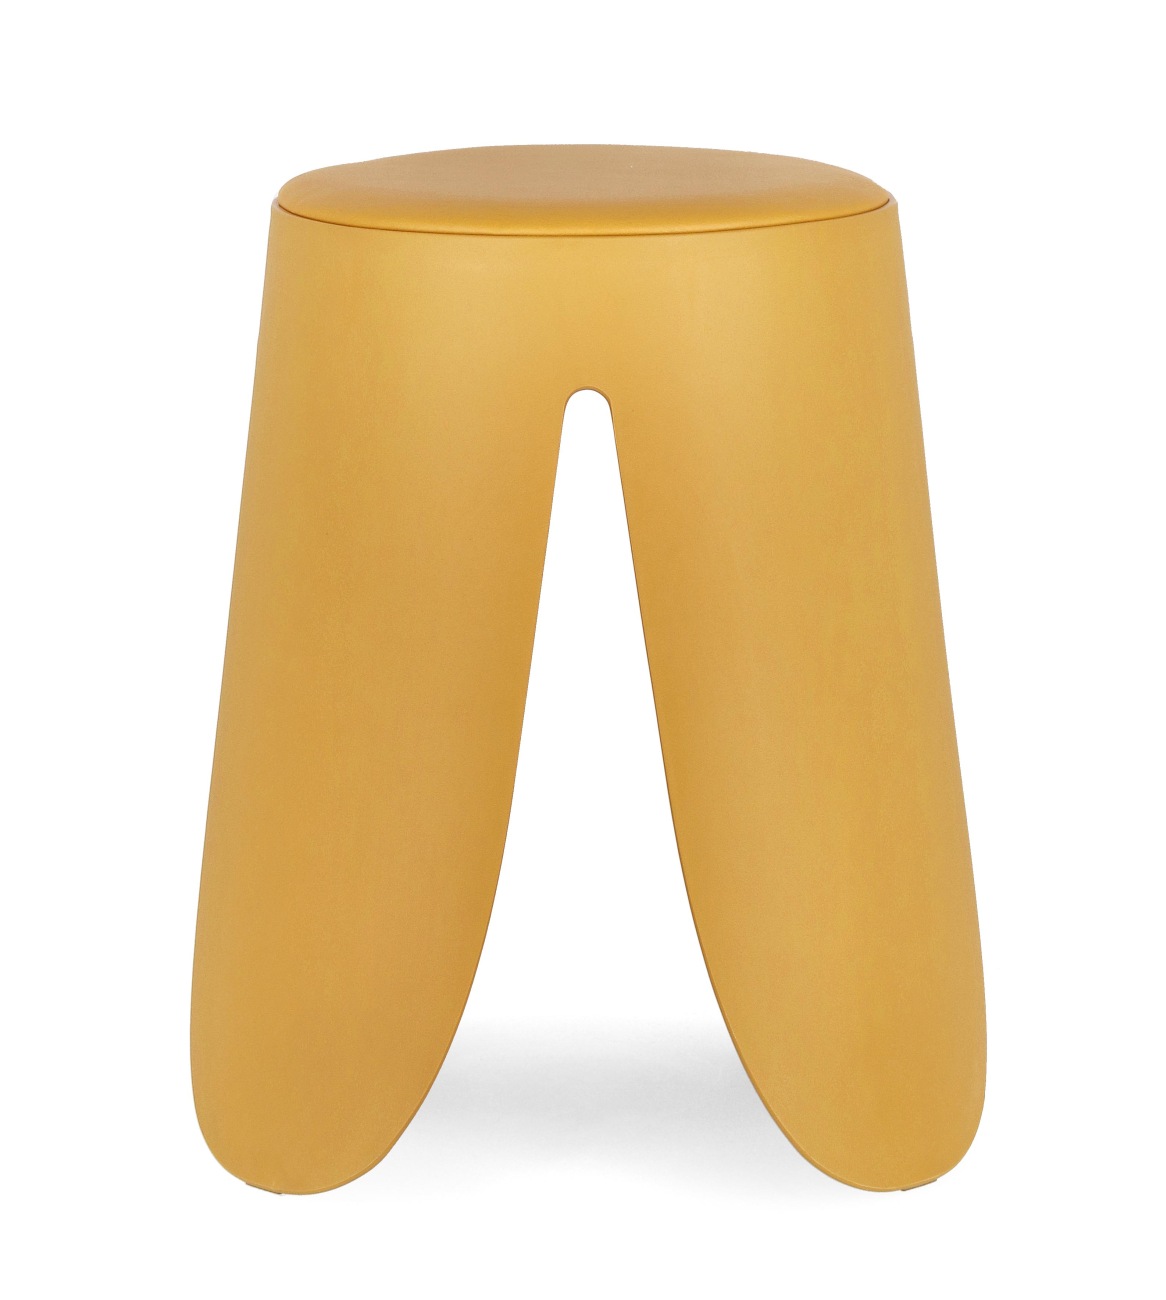 Der Hocker Imogen überzeugt mit seinem modernen Stil. Gefertigt wurde er aus Kunststoff, welcher einen gelben Farbton besitzt. Die Sitzfläche ist aus Kunstleder und hat eine gelbe Farbe. Der Hocker besitzt einen Durchmesser von 37 cm.